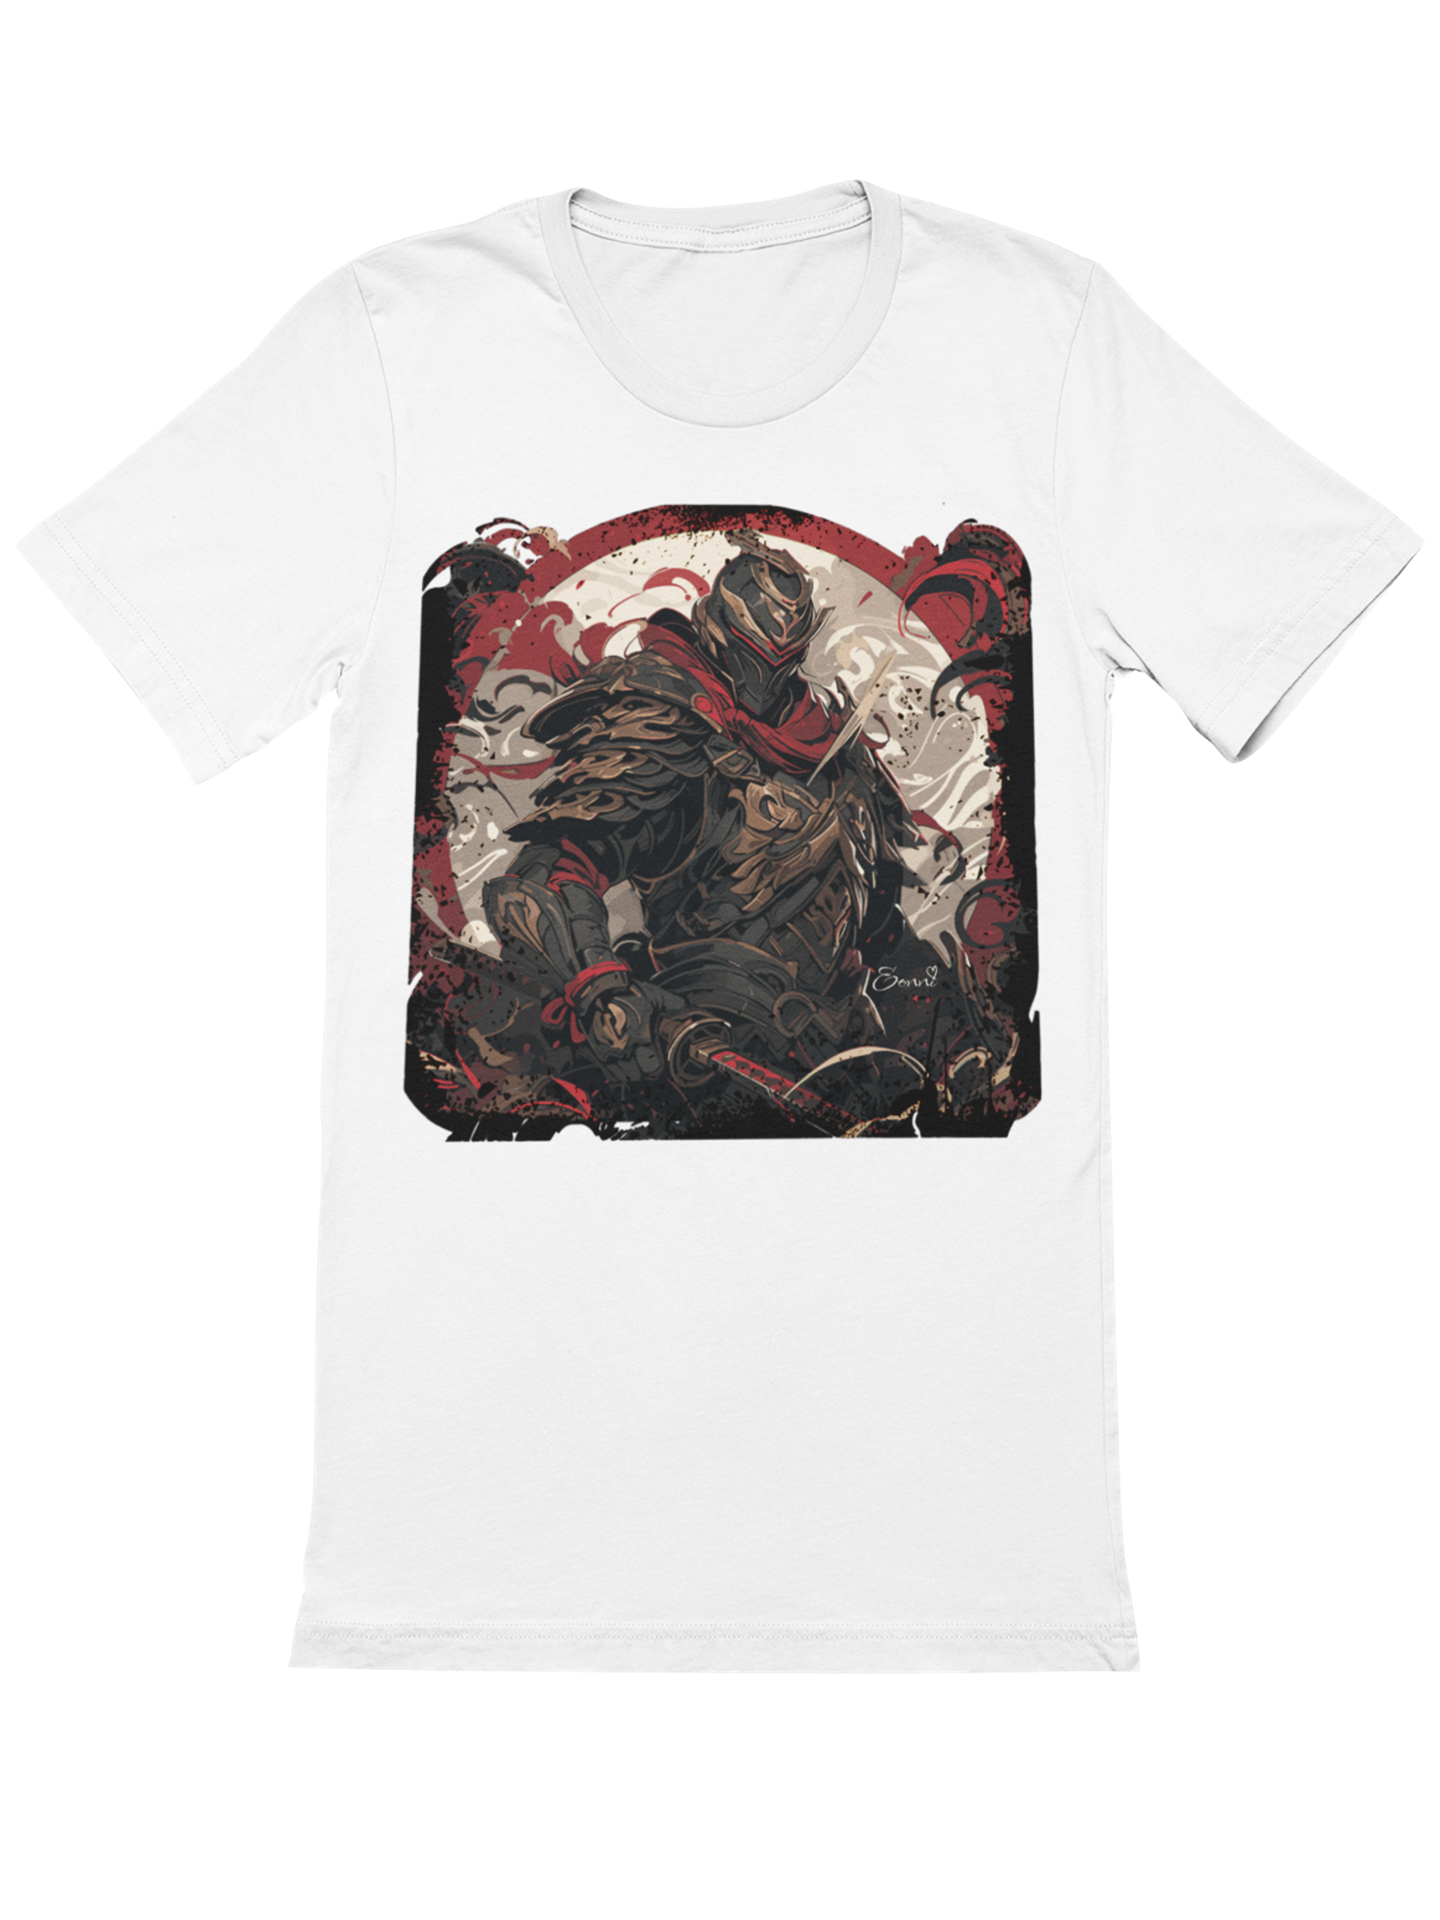 Demon in Samurai-Ruestung und Helm mit Katana Japan Bio T-Shirt 1012